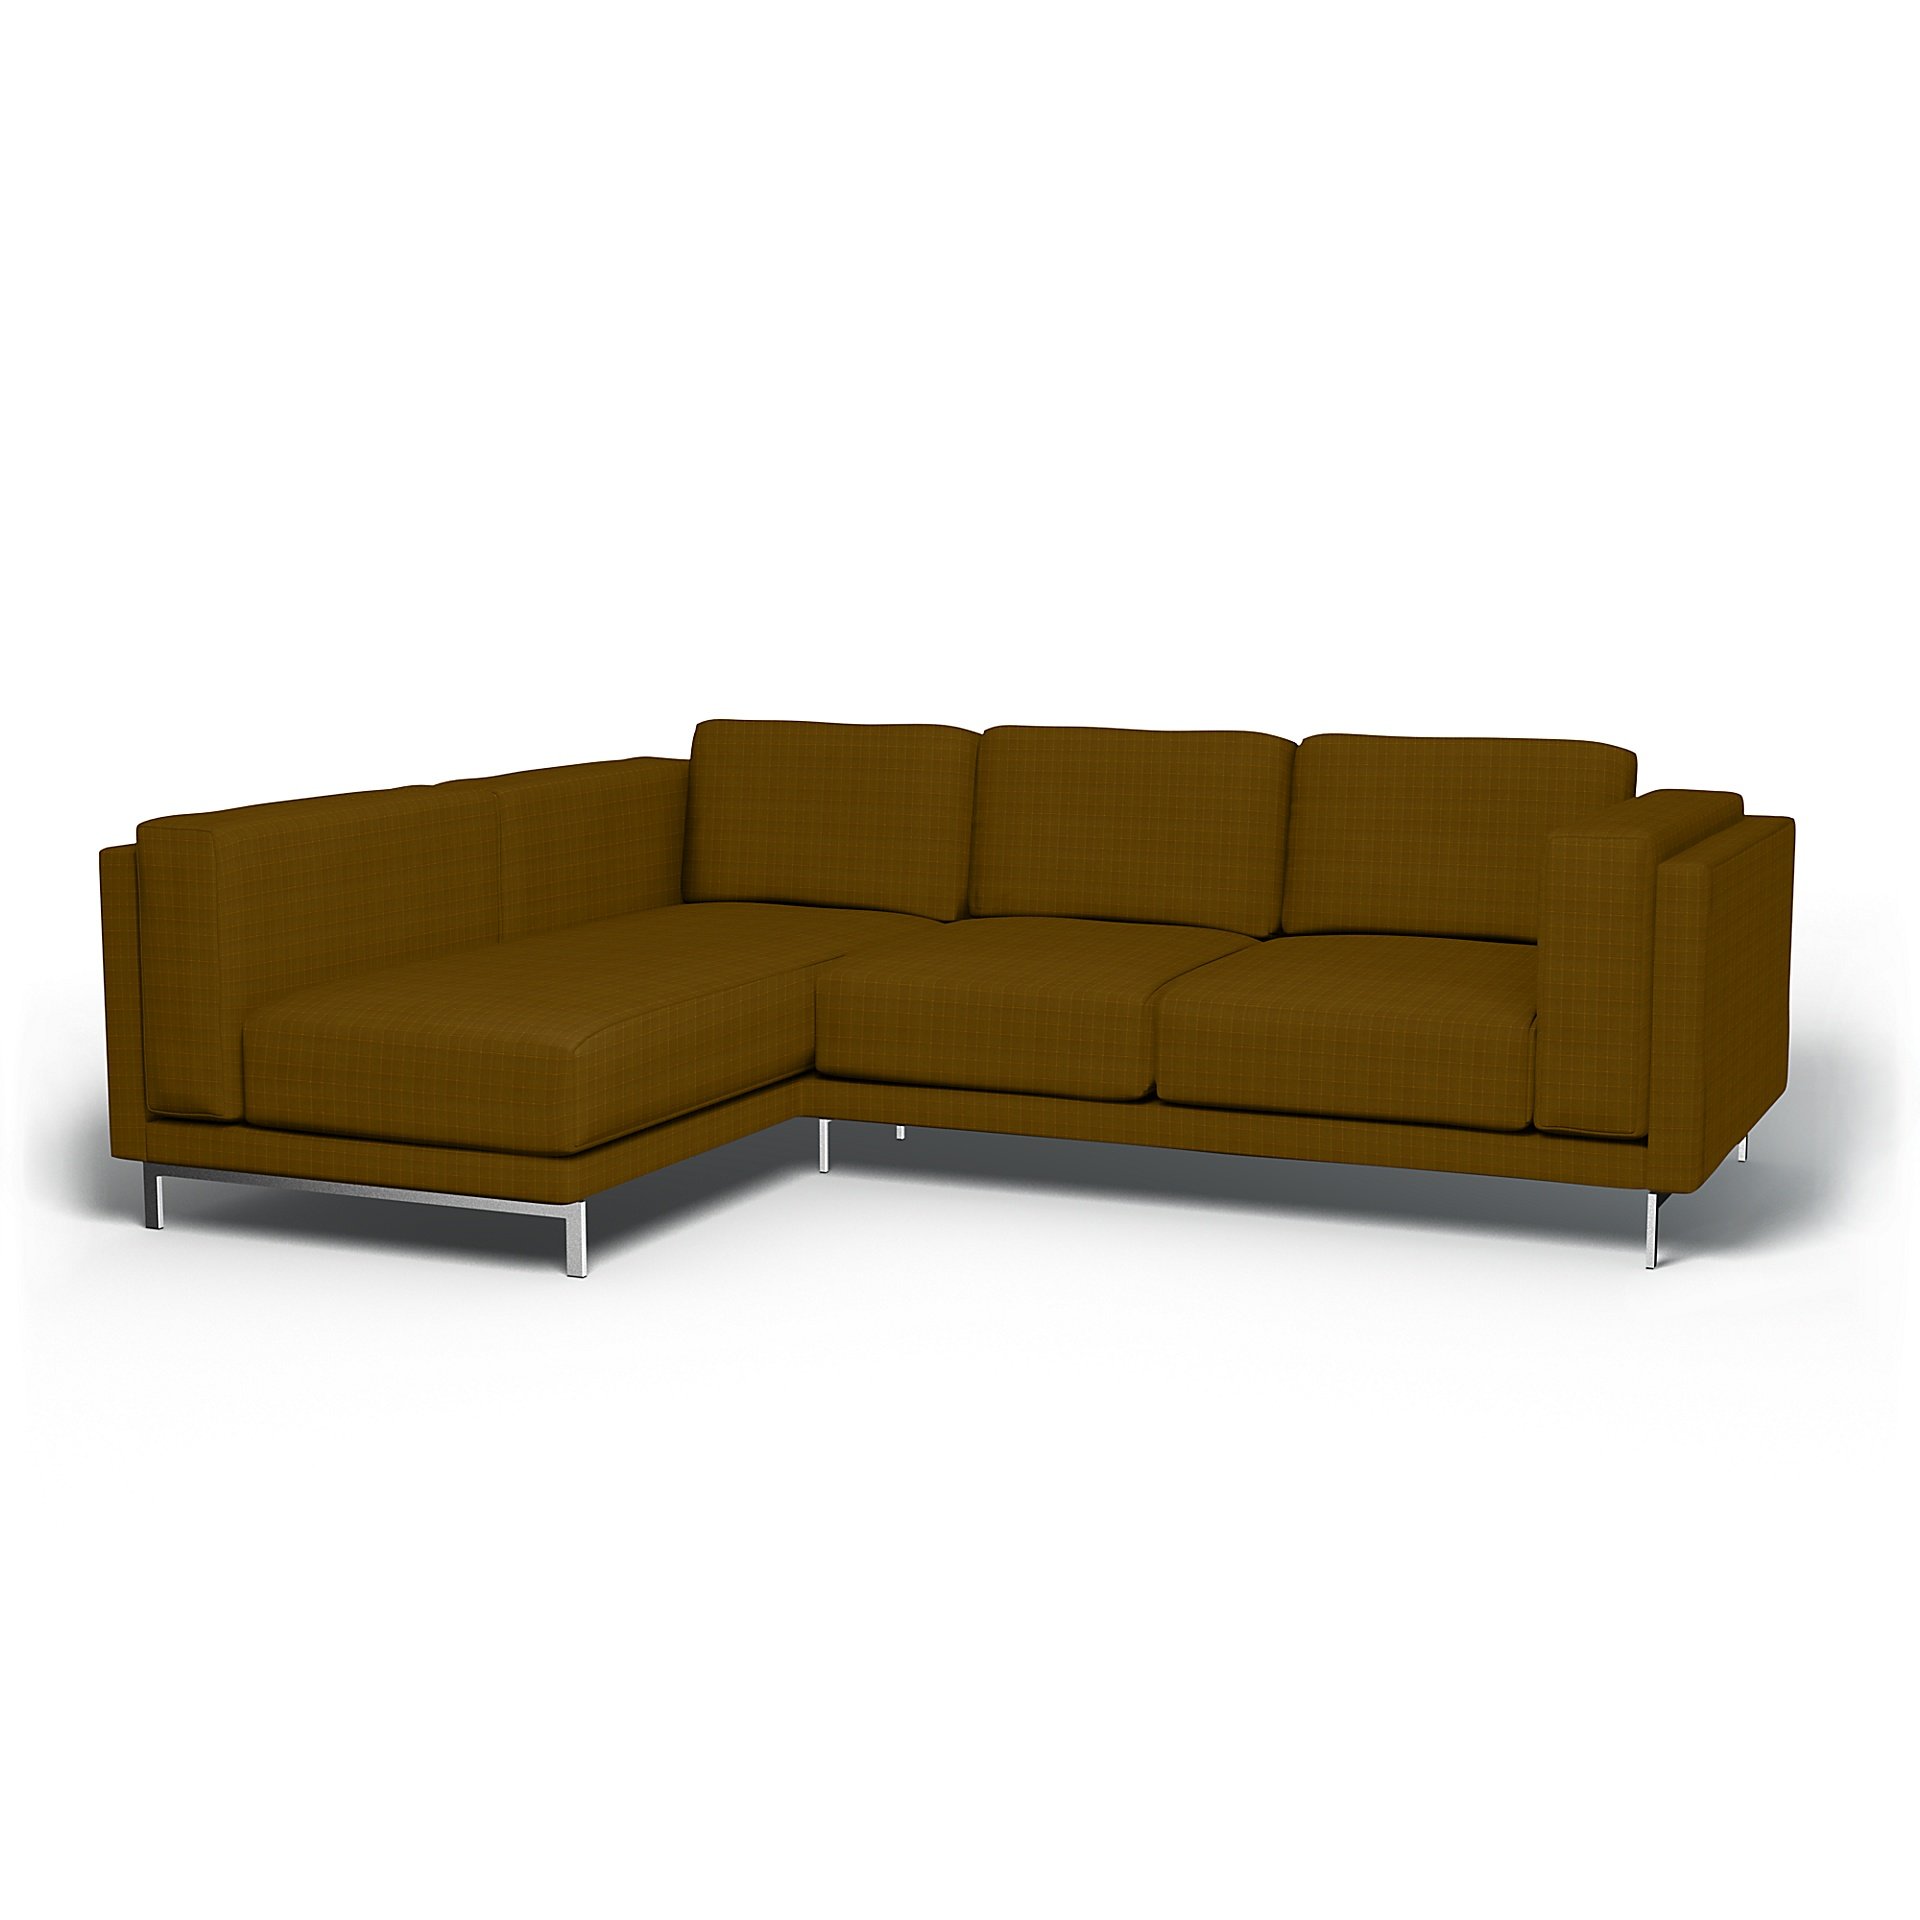 IKEA - Nockeby 3 Seater Sofa with Left Chaise Cover, Turmeric, Velvet - Bemz